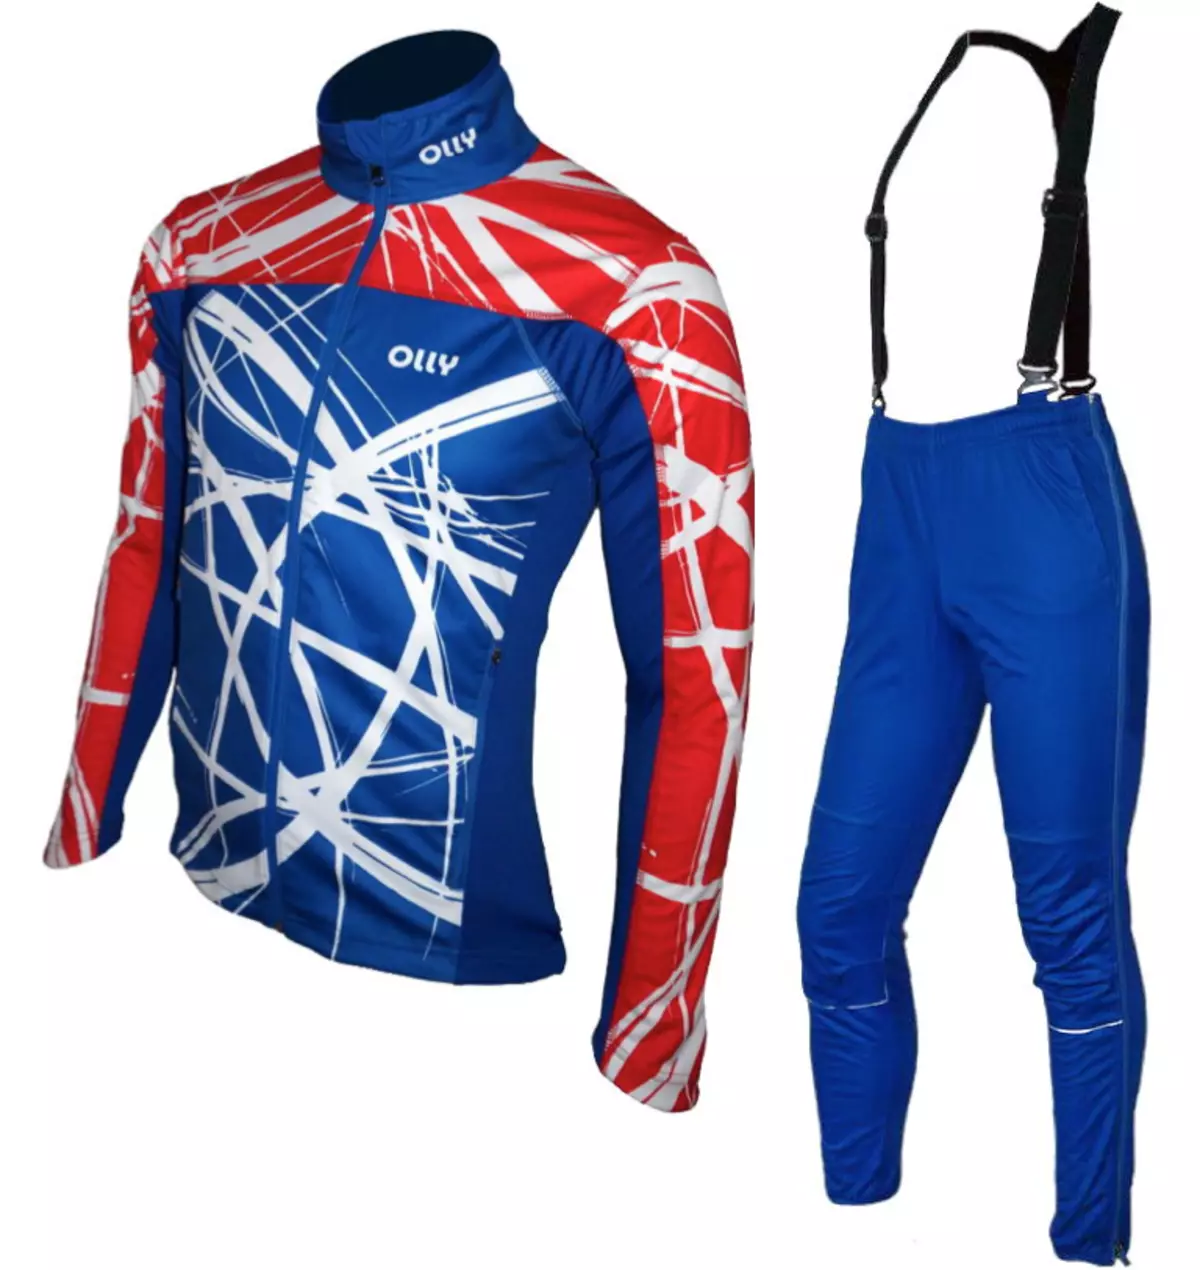 Pracovné lyžiarske obleky: Dámske a pánske kostýmy pre plážové lyžiarske, ratingové športové modely. Ako si vybrať ohrievanú zimné lyže? 20246_11